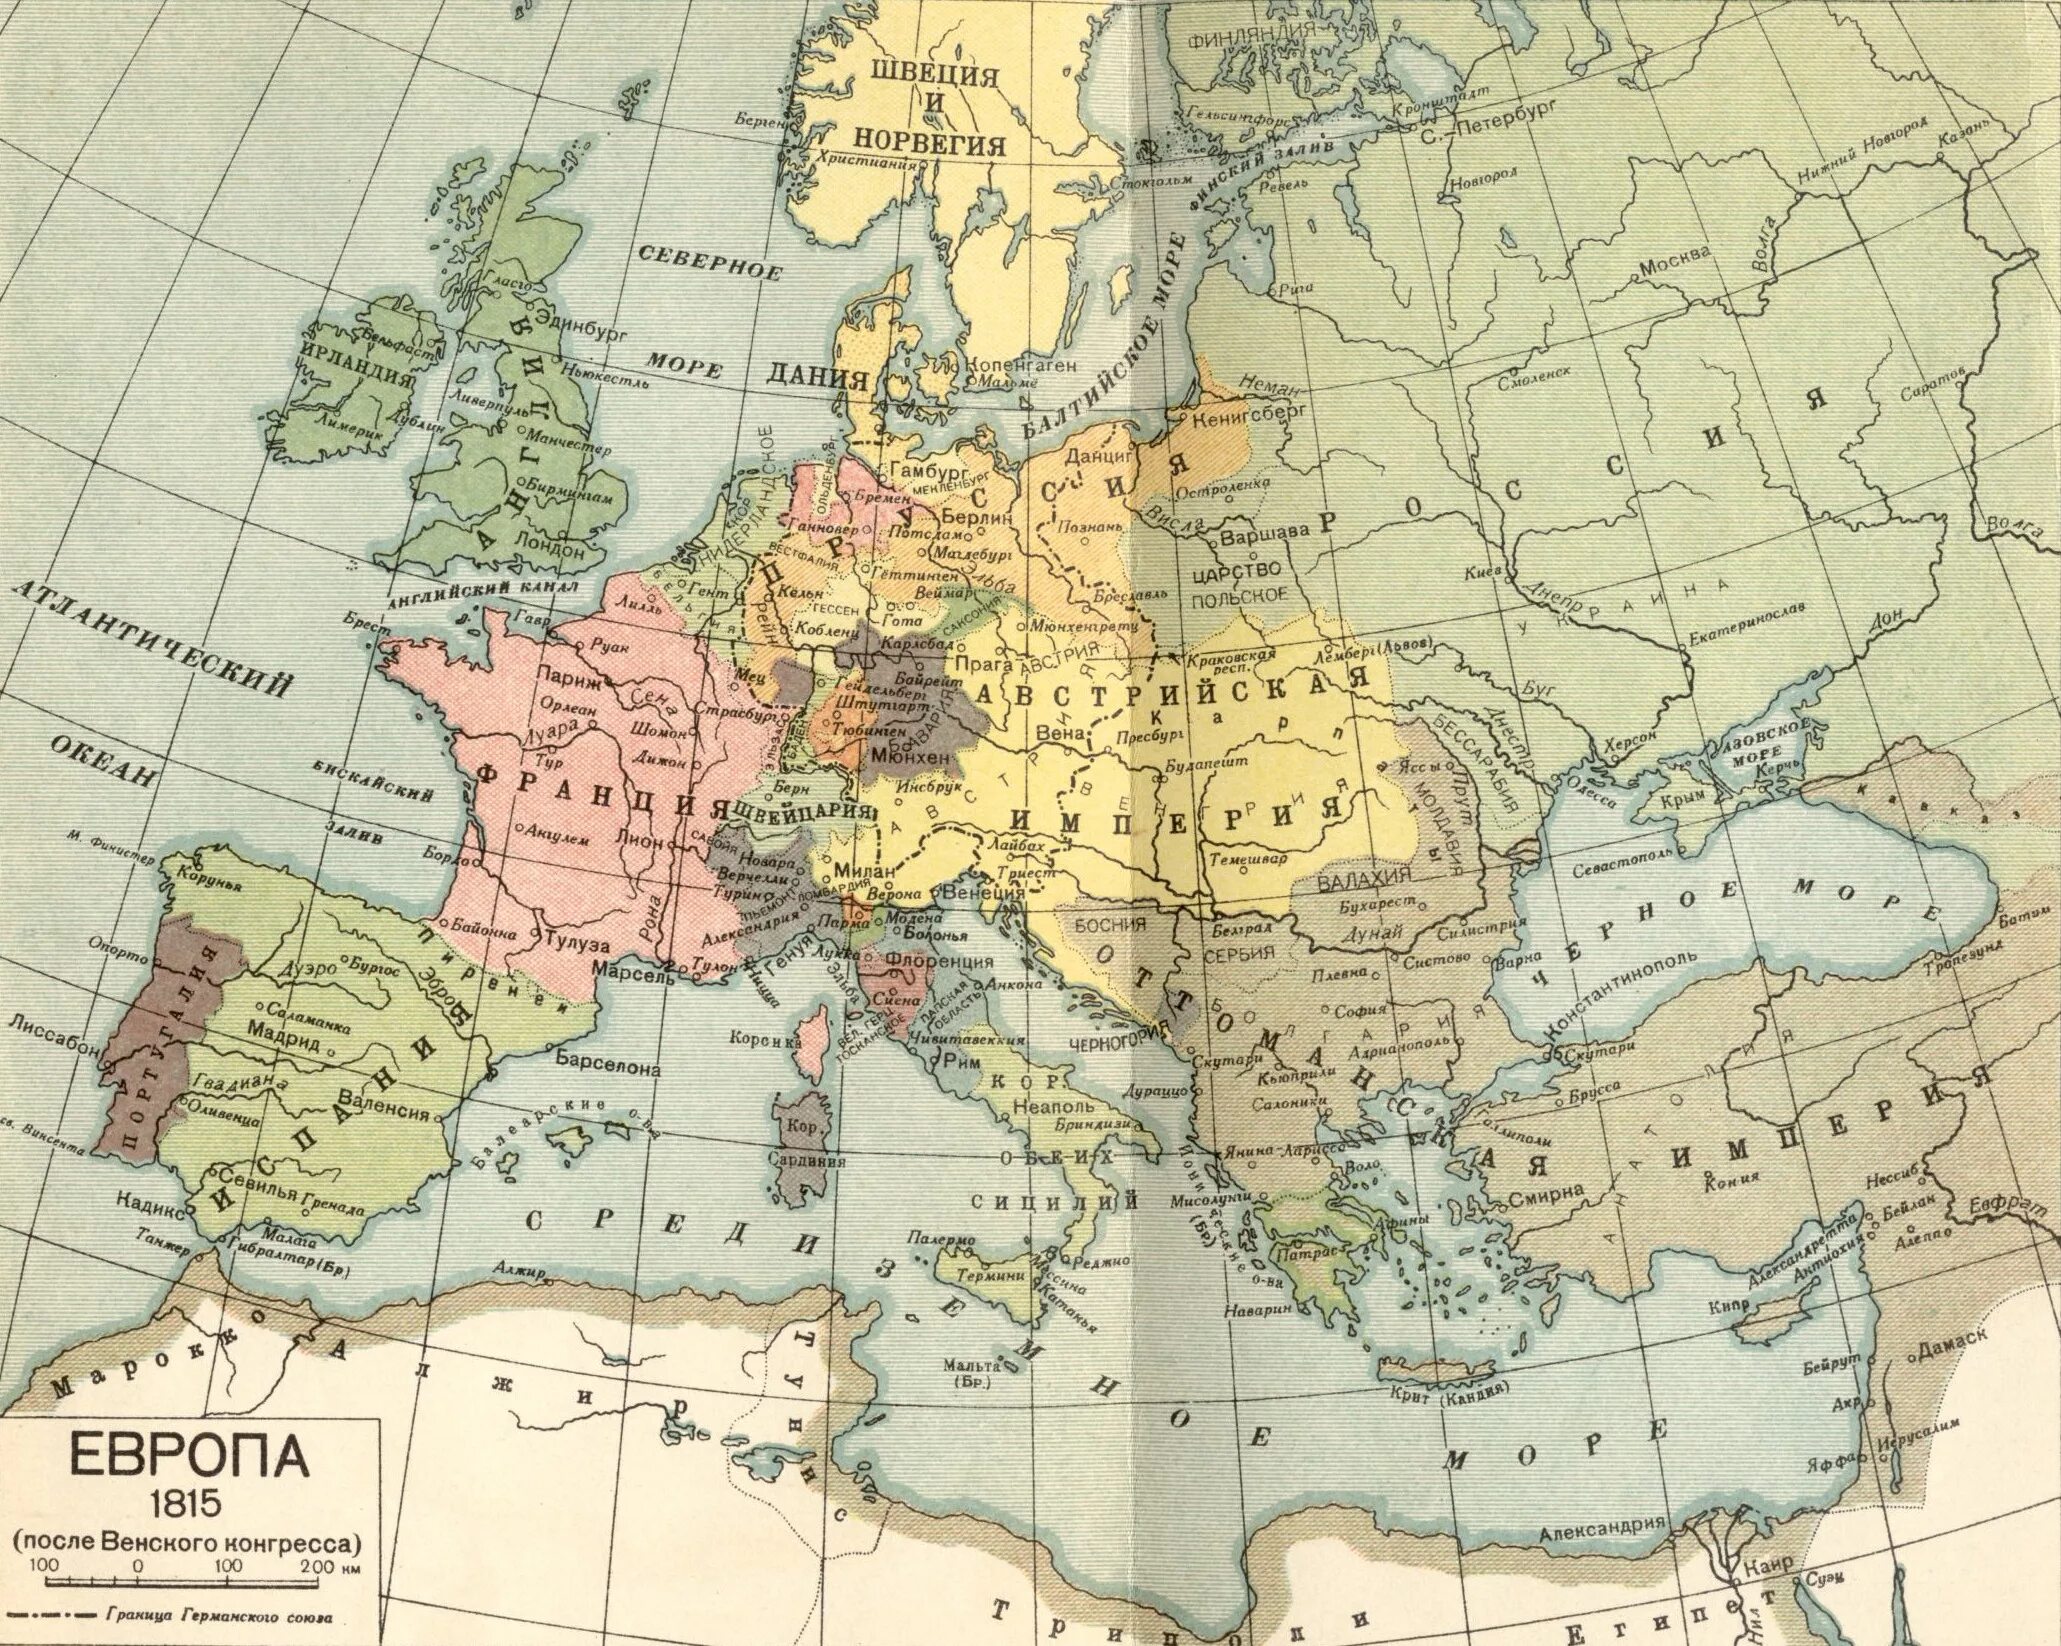 Мир в 1800. Карта Европа после Венского конгресса 1815. Карта Европы после 1815 года. Политическая карта Европы середины 19 века. Политическая карта Европы 1815 года.